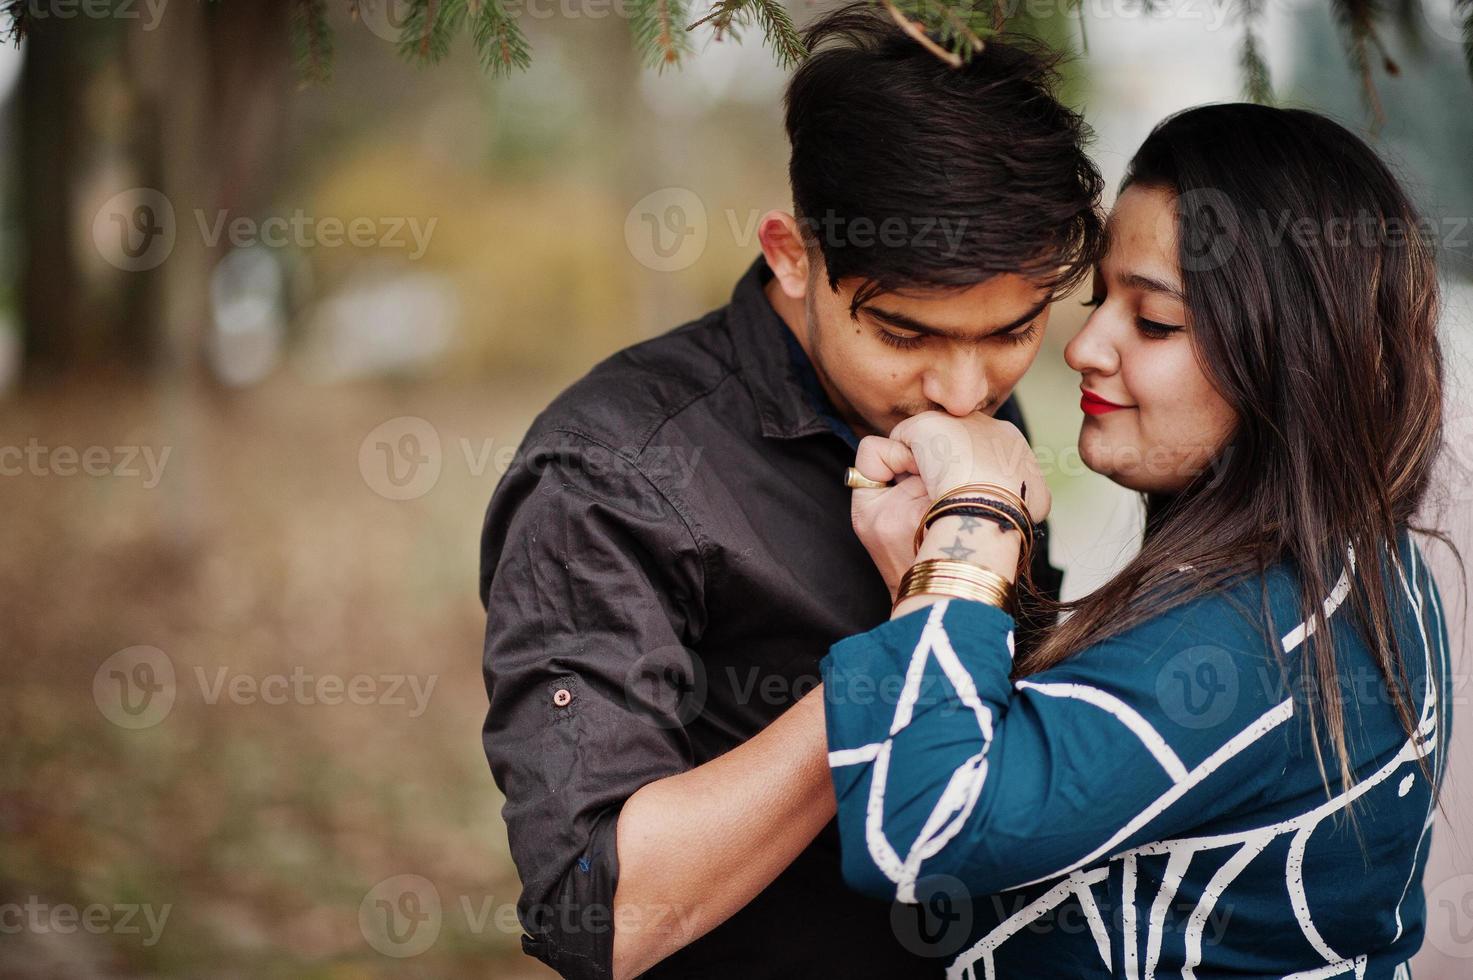 storia d'amore di una coppia indiana in posa all'aperto, l'uomo le bacia la mano. foto